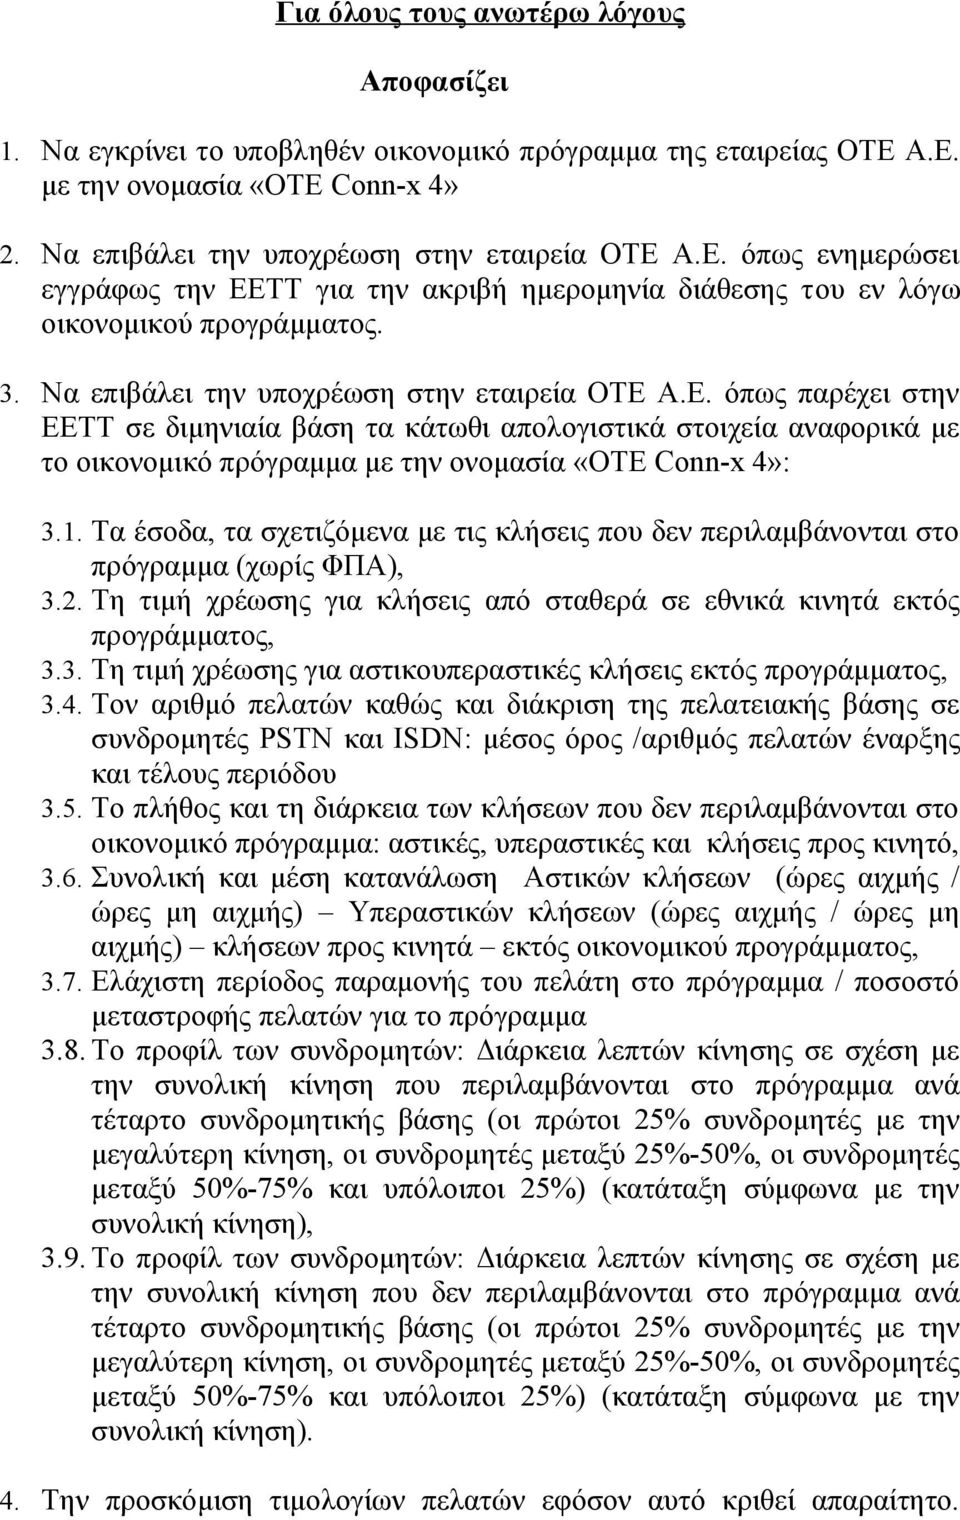 Να επιβάλει την υποχρέωση στην εταιρεία ΟΤΕ Α.Ε. όπως παρέχει στην ΕΕΤΤ σε διμηνιαία βάση τα κάτωθι απολογιστικά στοιχεία αναφορικά με το οικονομικό πρόγραμμα με την ονομασία «ΟΤΕ Conn-x 4»: 3.1.